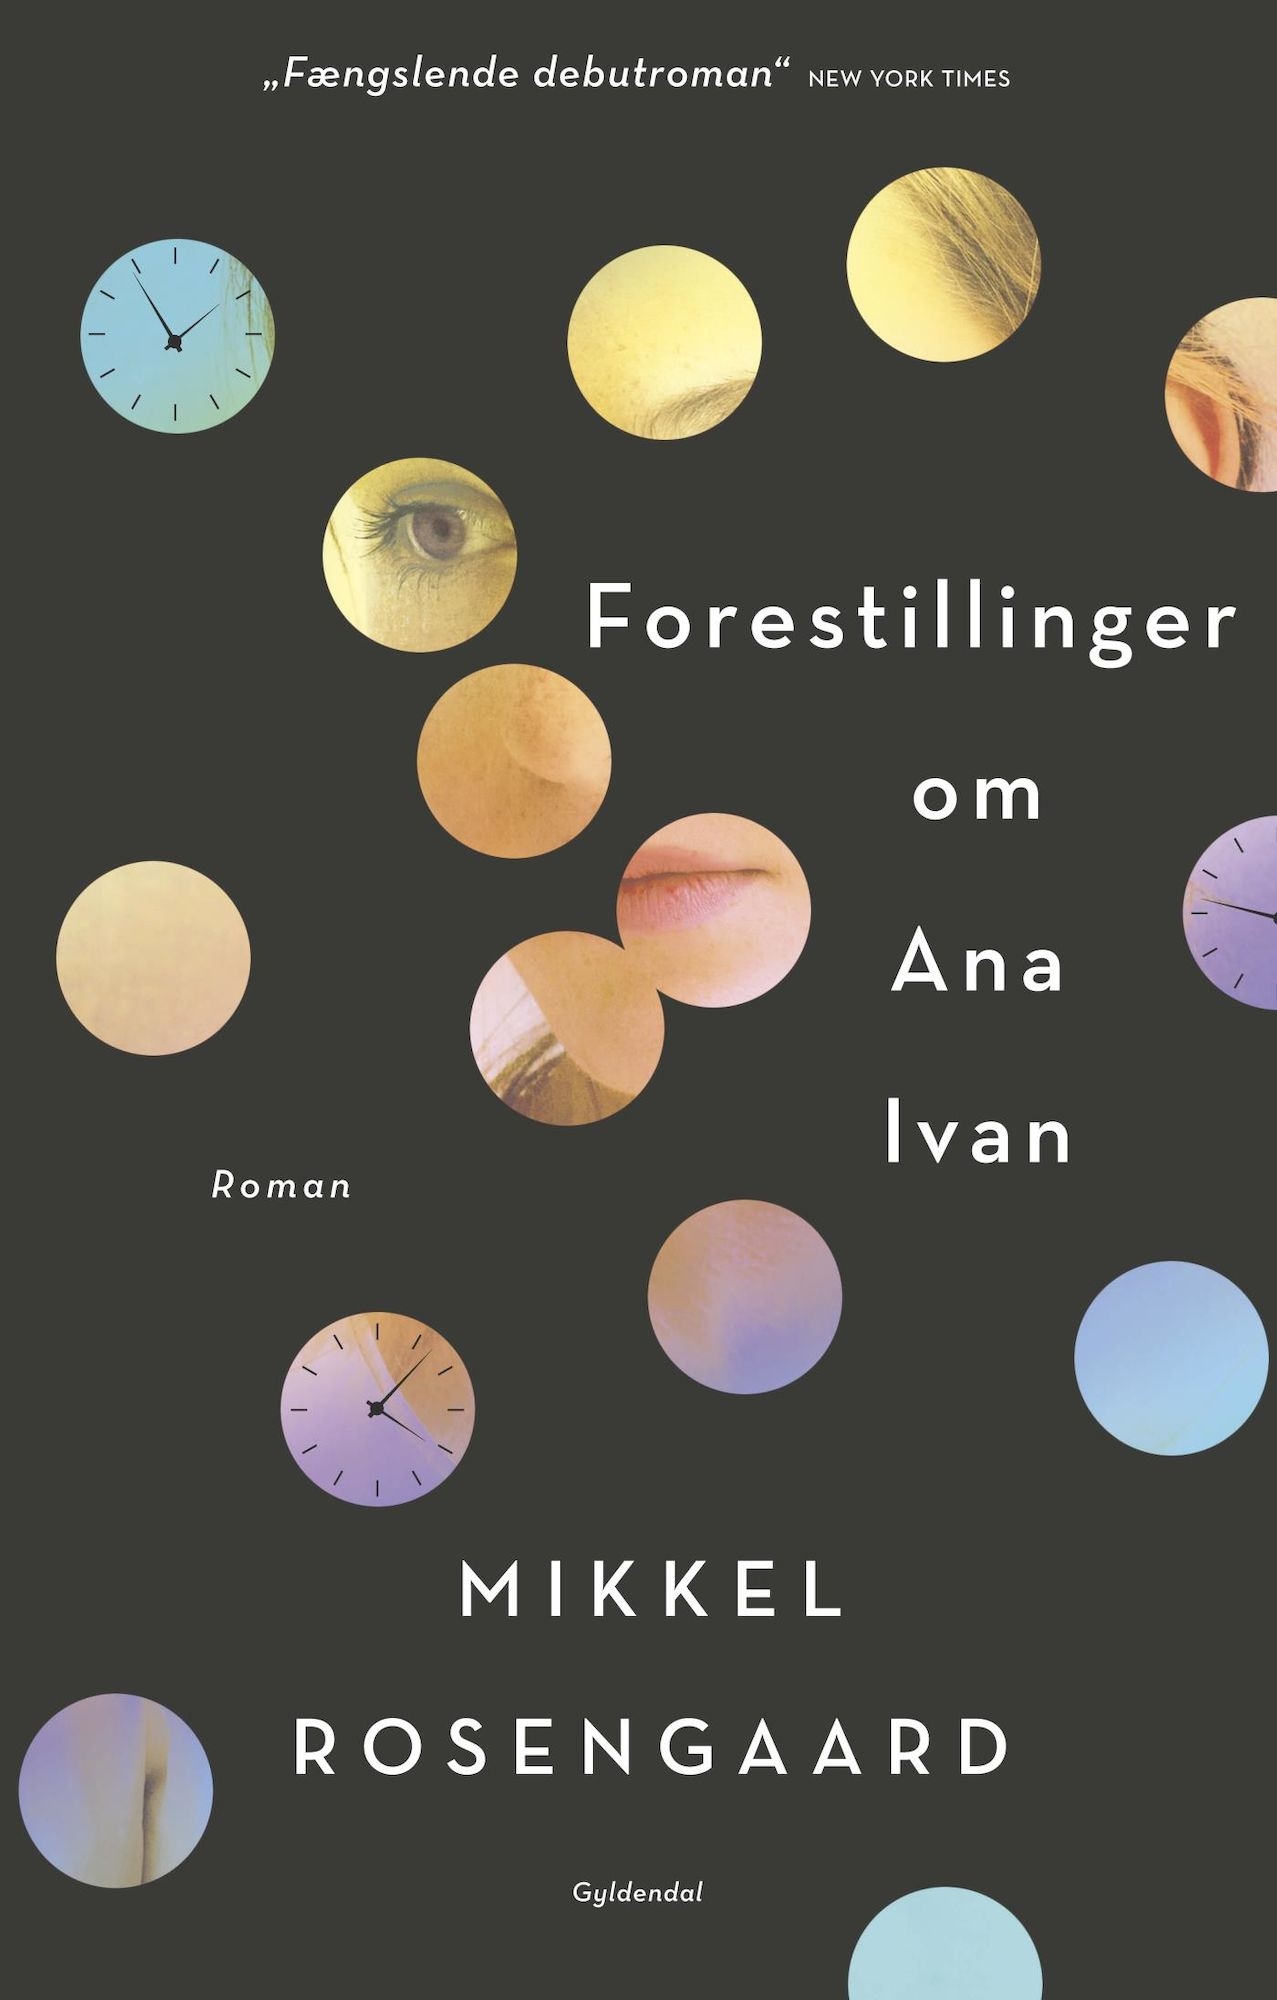 Forside af romanen 'Forestillinger om Ana Ivan' af Mikkel Rosengaard